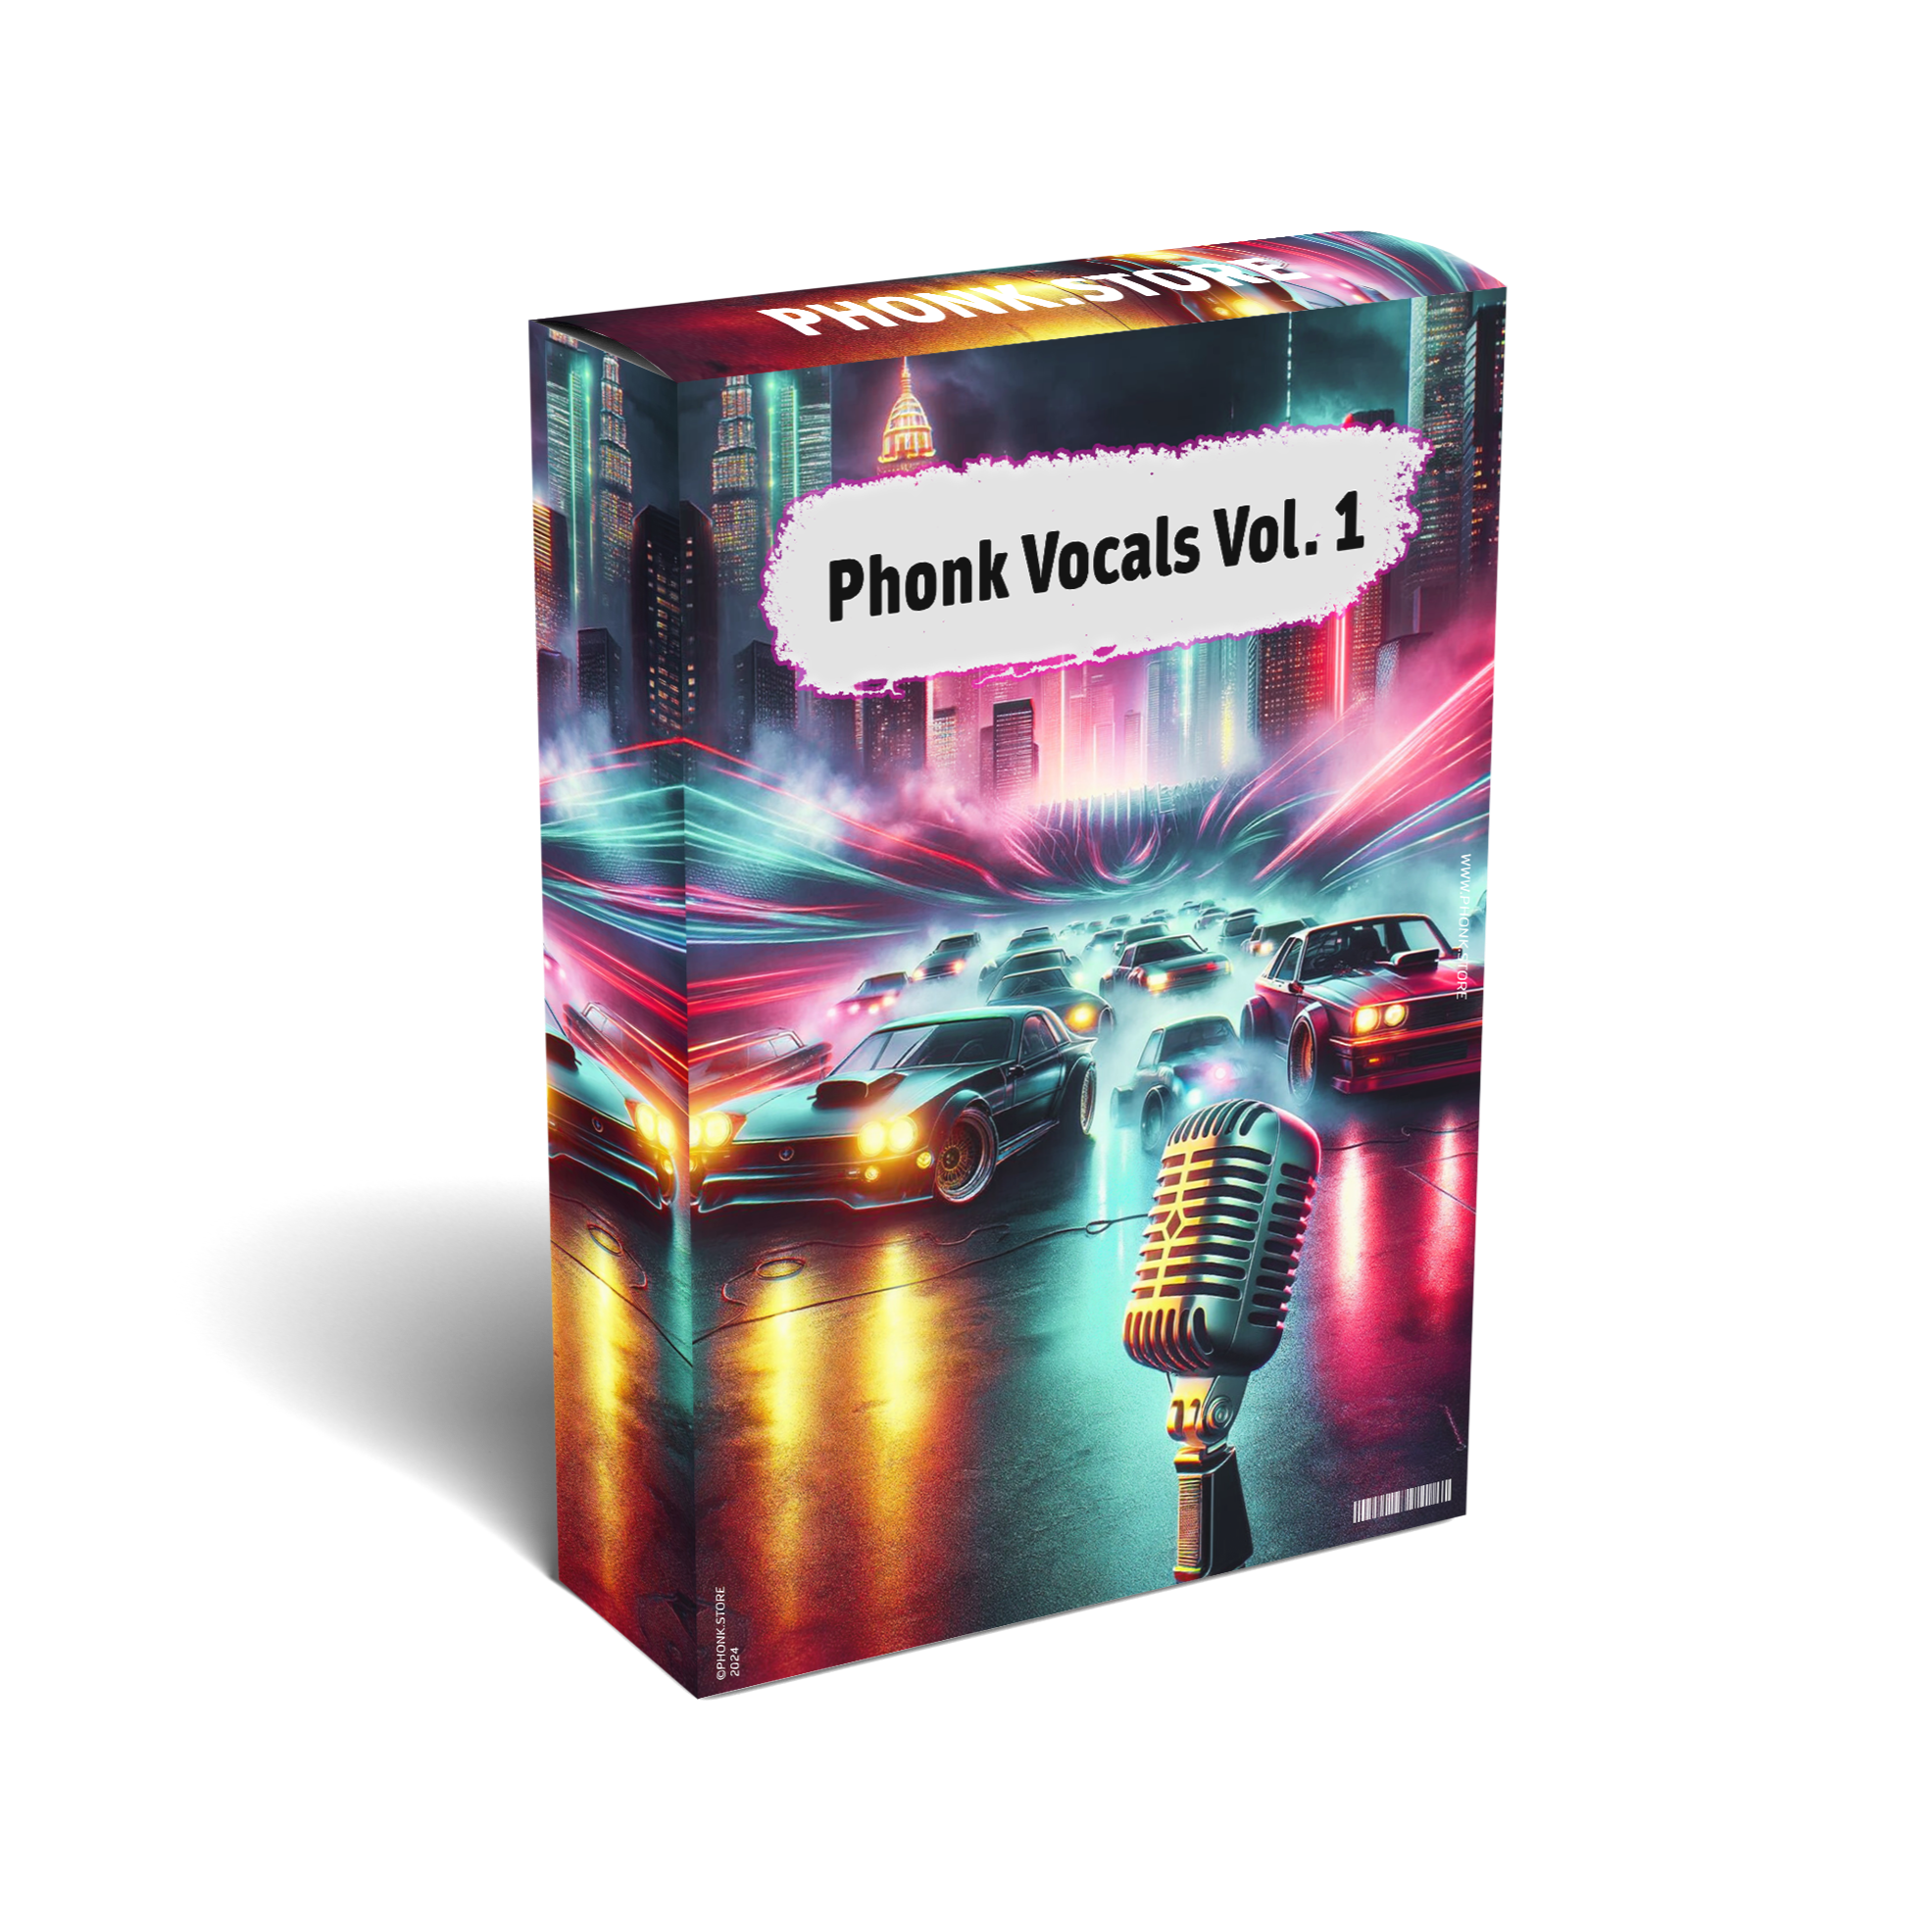 Phonk Vocals Vol. 1